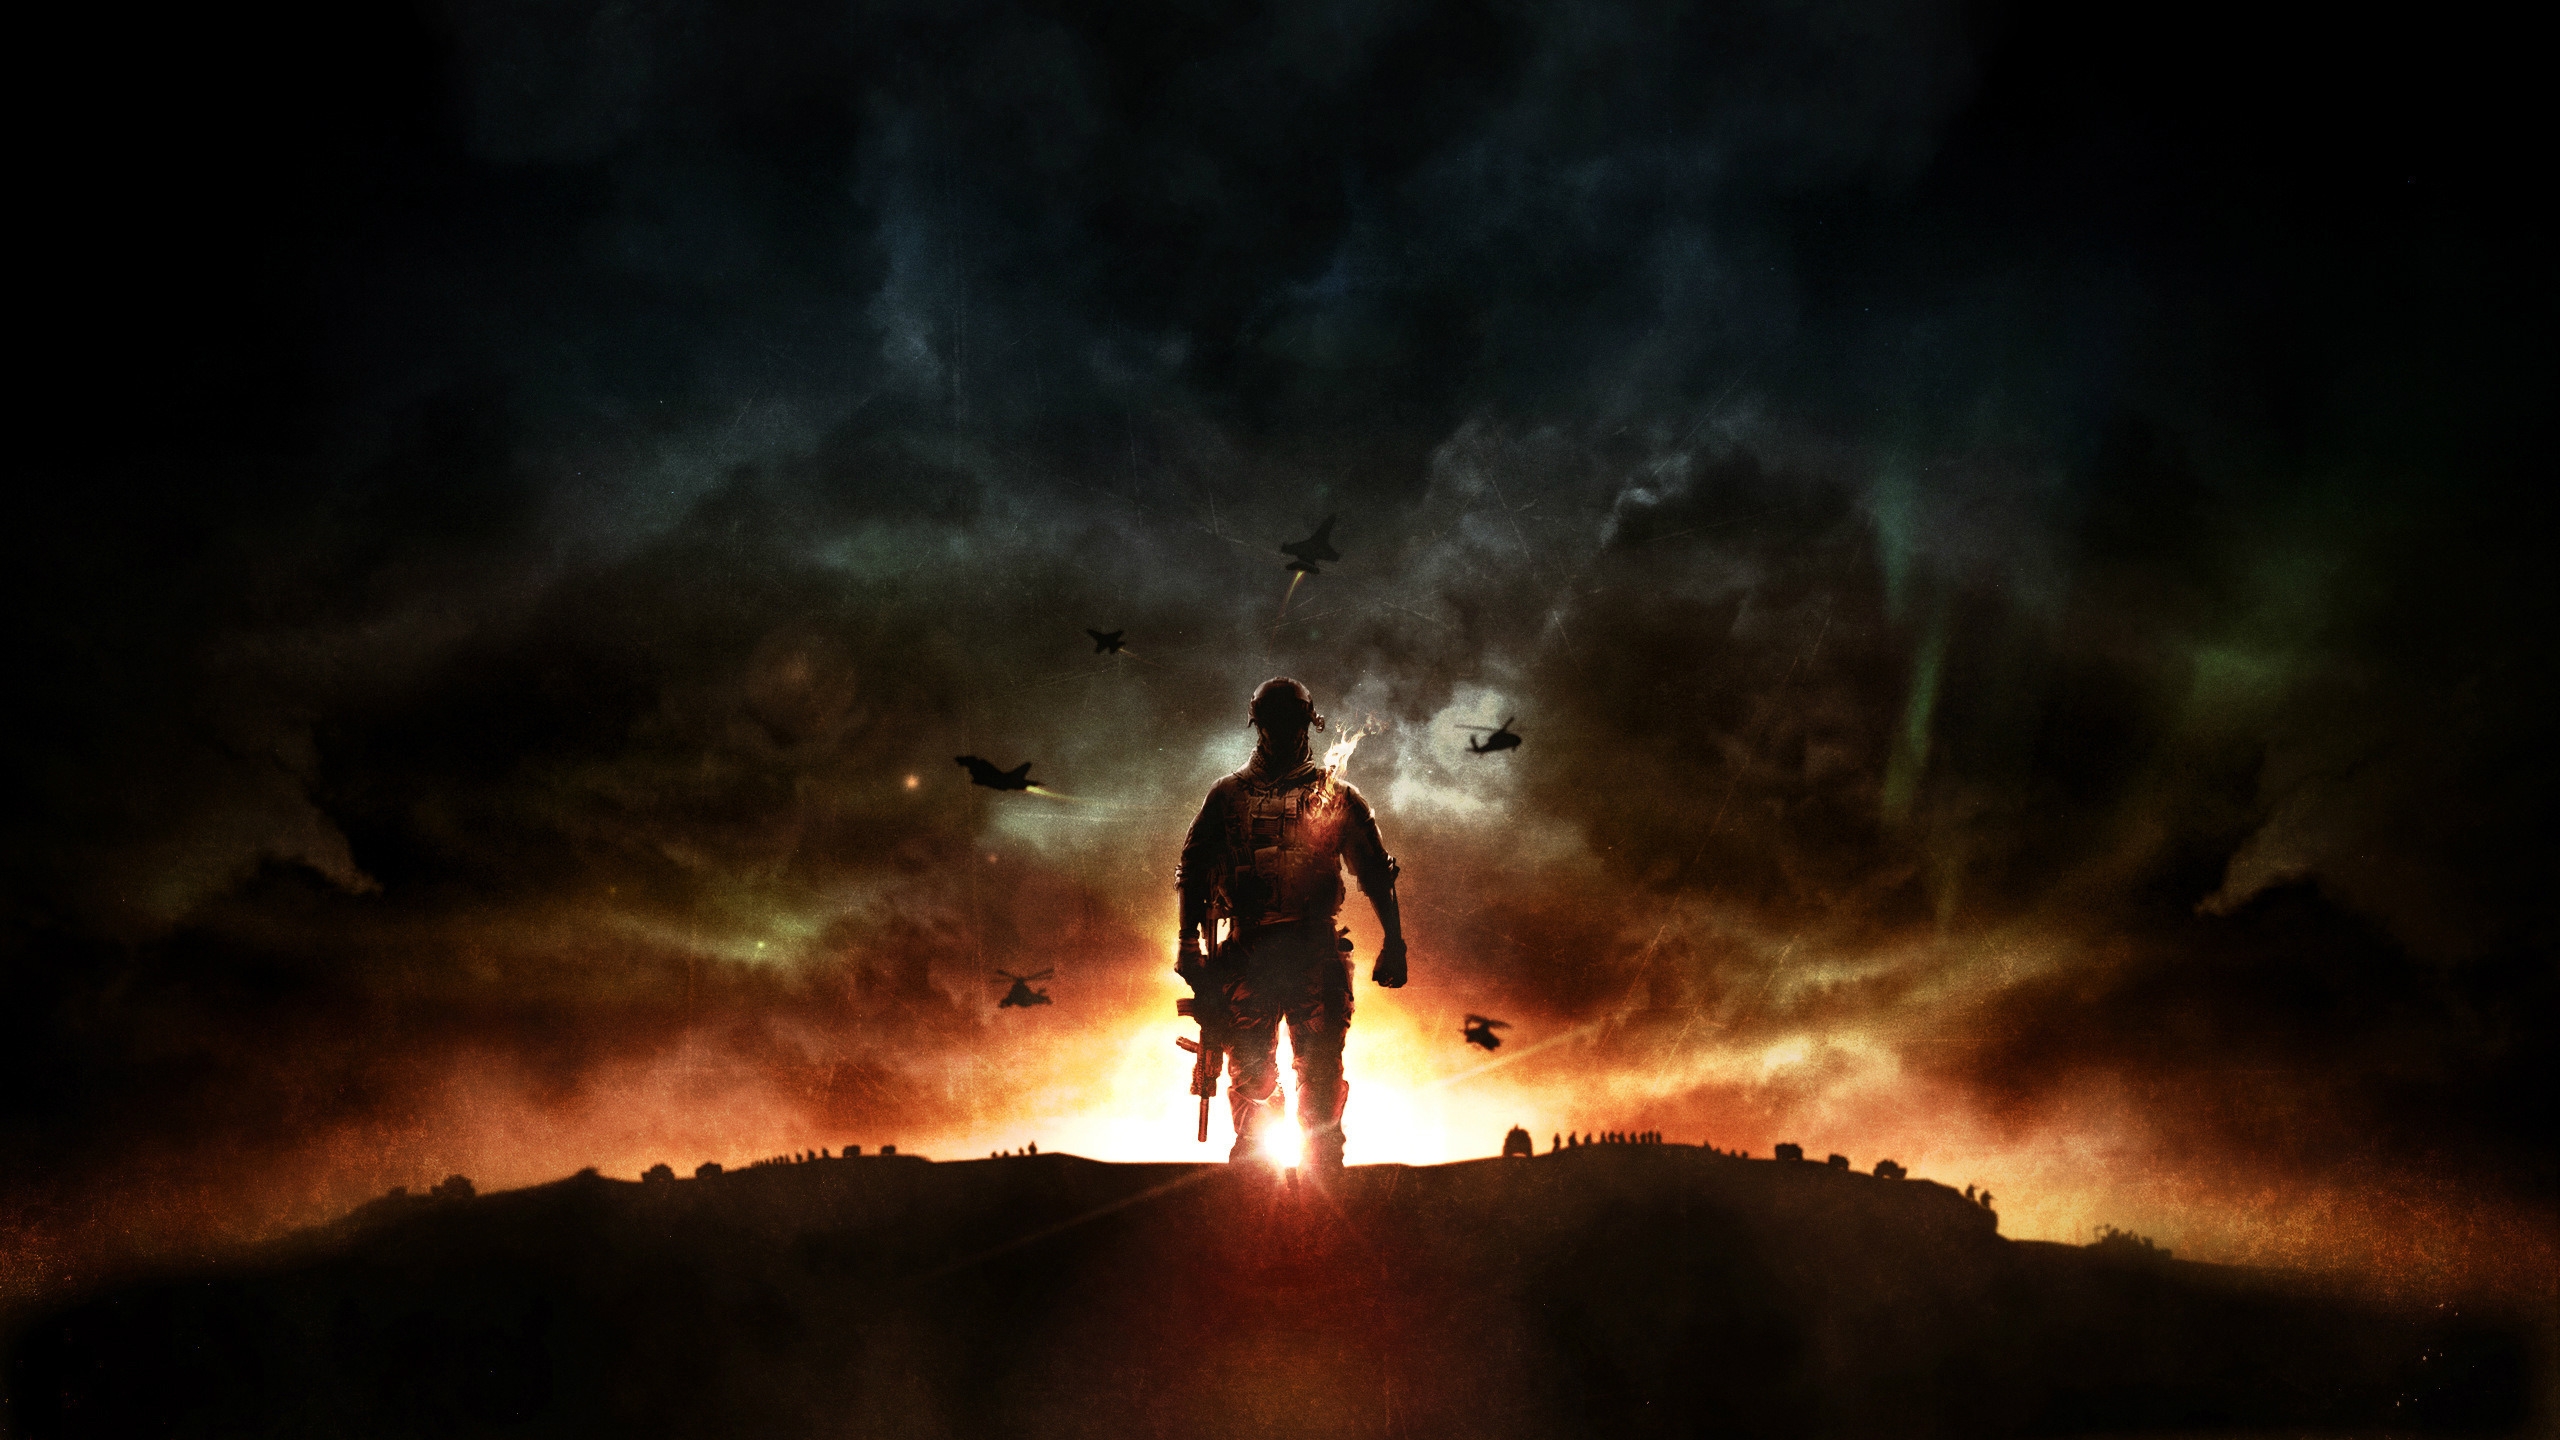 Battlefield 4 Sunset War for 2560x1440 HDTV resolution